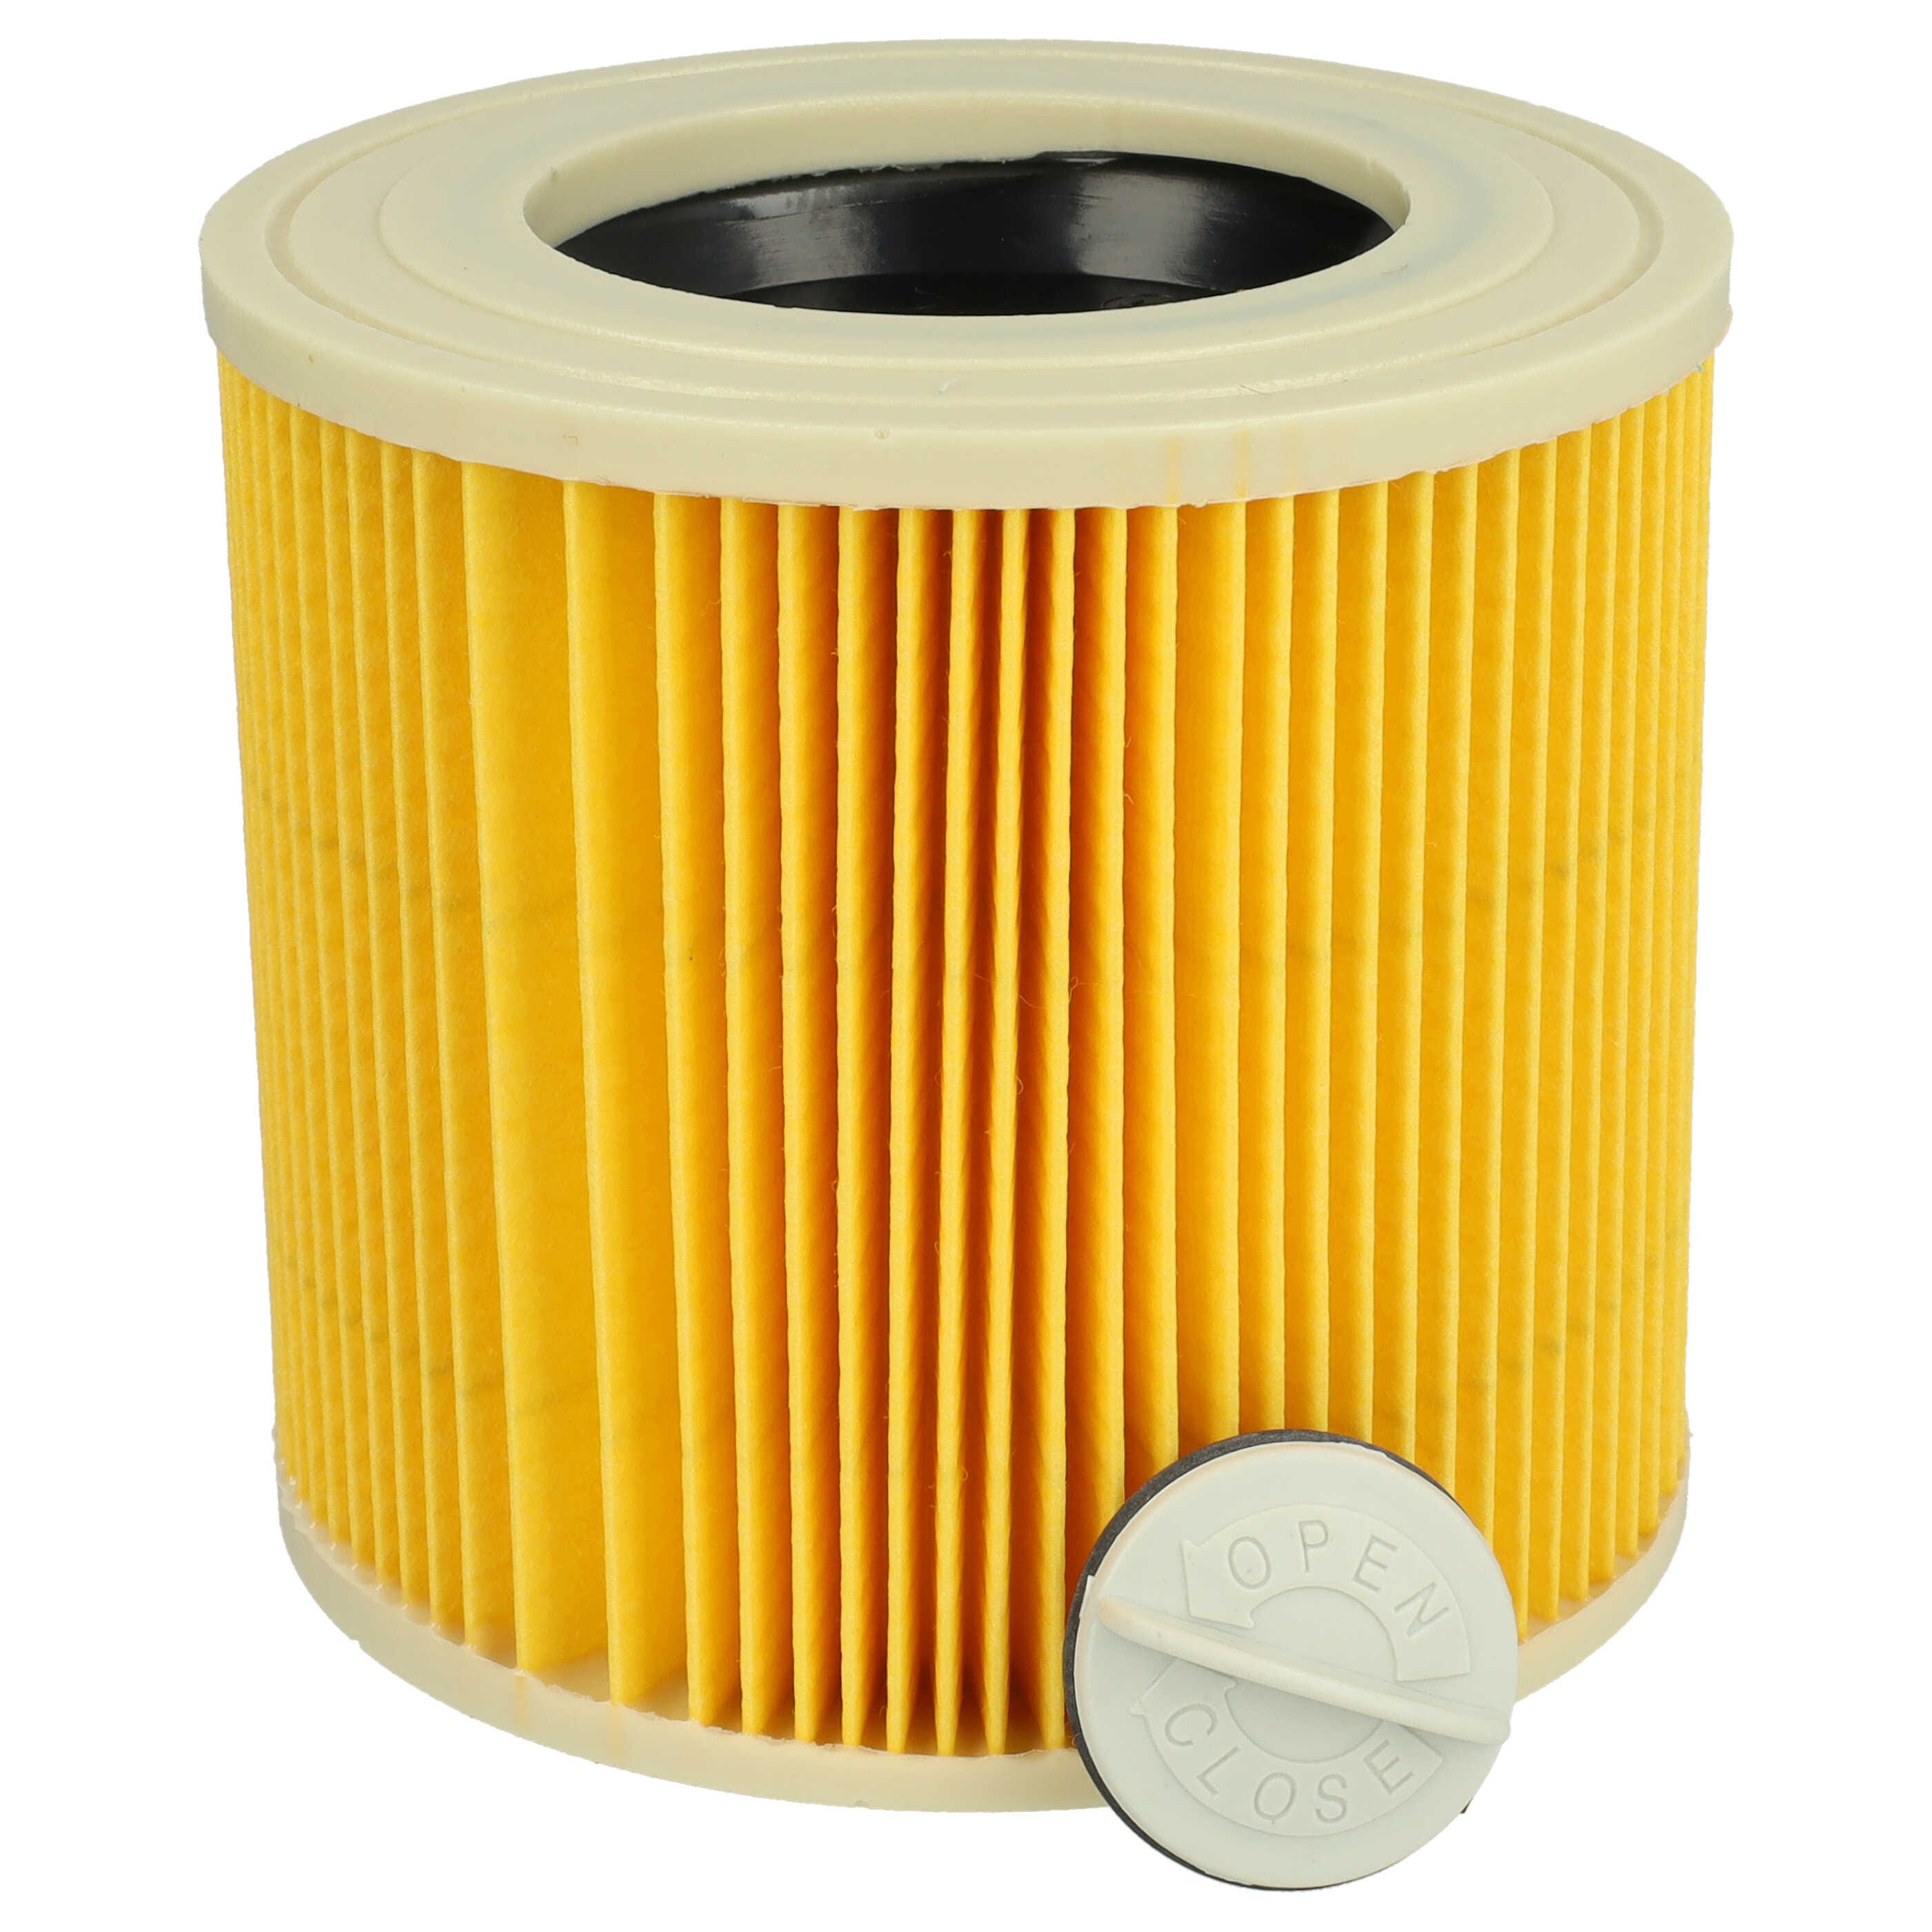 Vhbw Filtre à cartouche compatible avec Kärcher WD 2 Plus V-12/4/18/C  aspirateur - Filtre plissé, papier